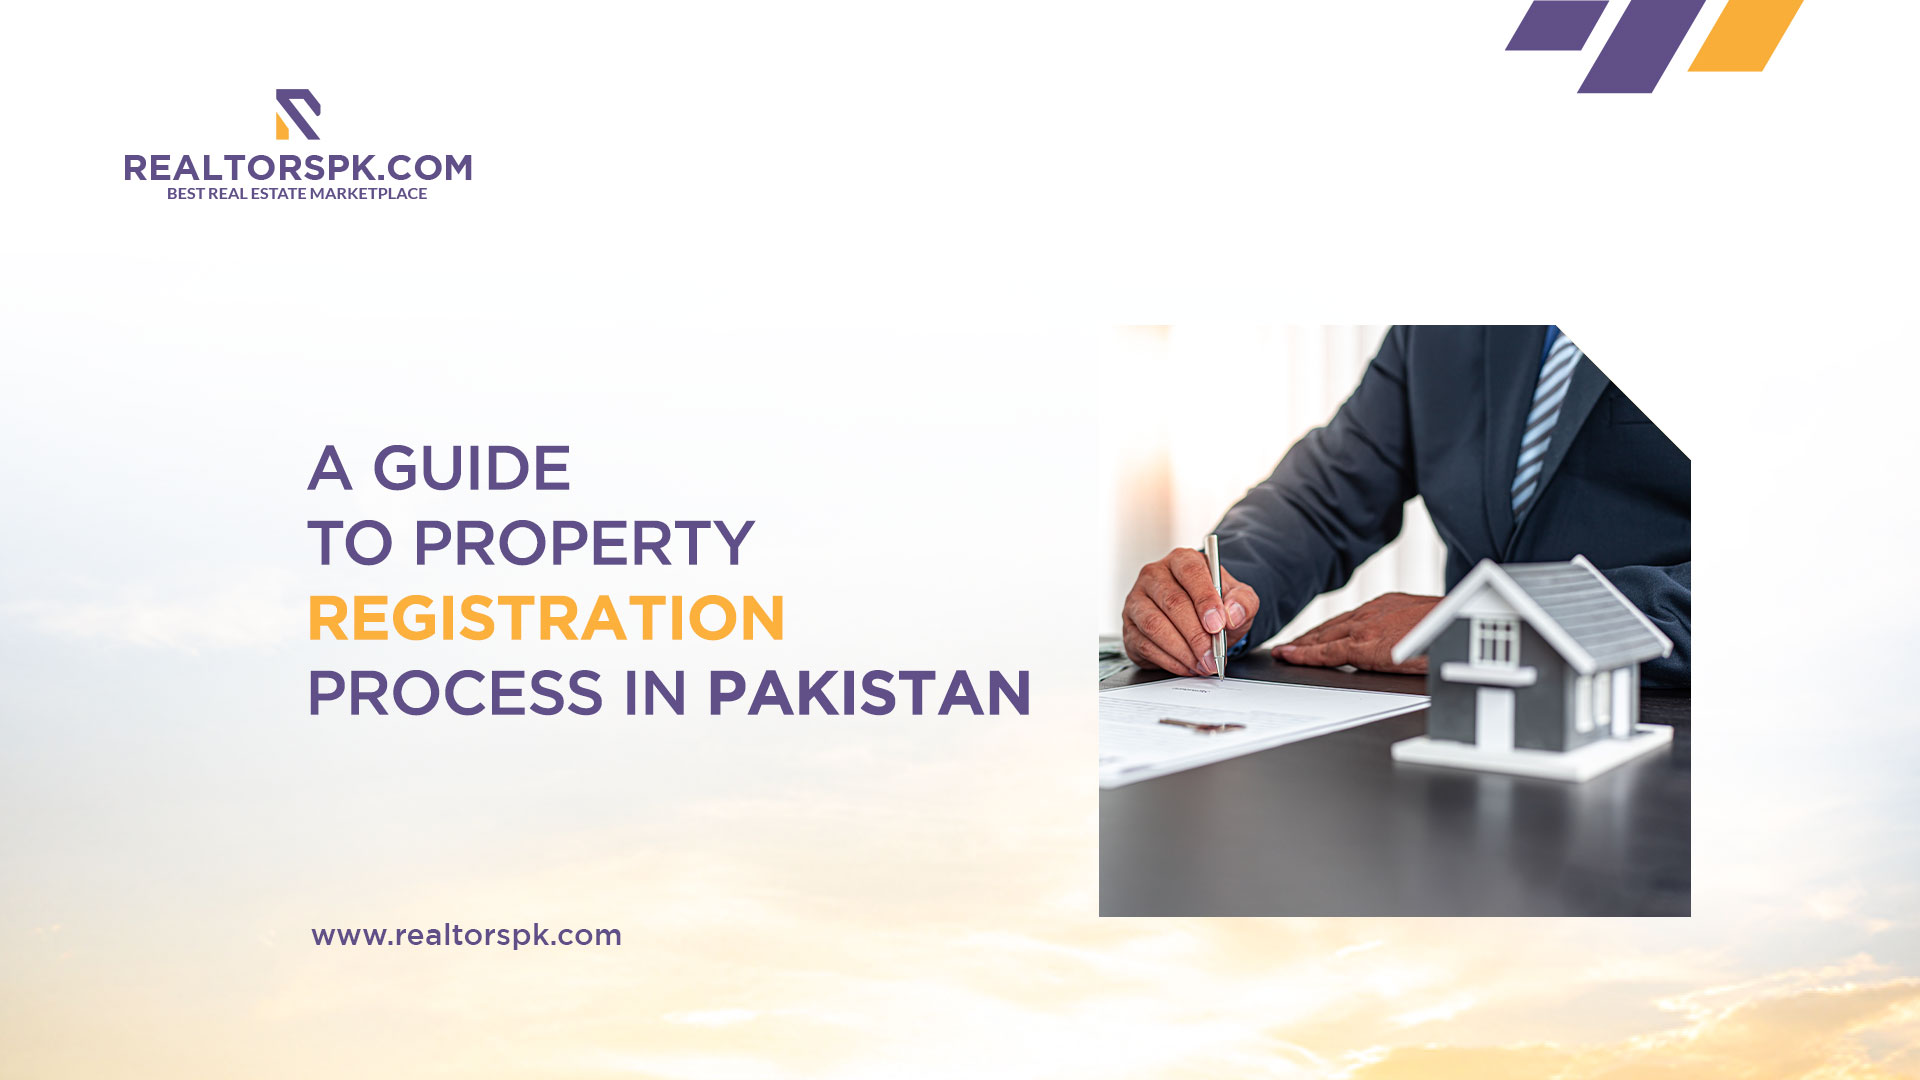 Property registration process in pakistan-Realtorspk